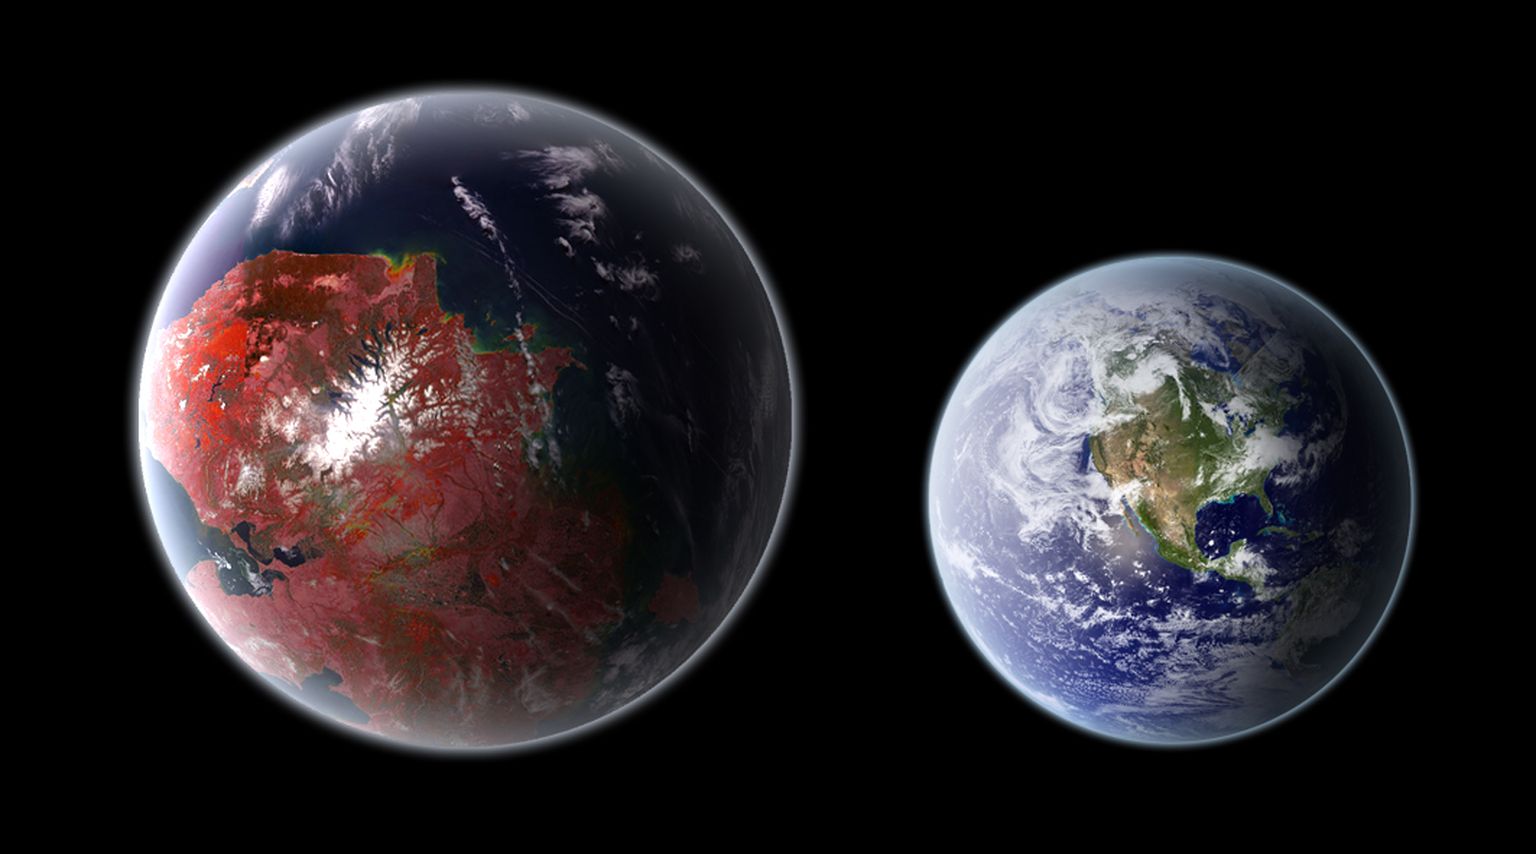 UUS MAA? Äsja teadlaste poolt avastatud eksoplaneet sarnaneb väga Maaga, kuid on meie koduplaneedist mõõtmetelt veidi suurem.